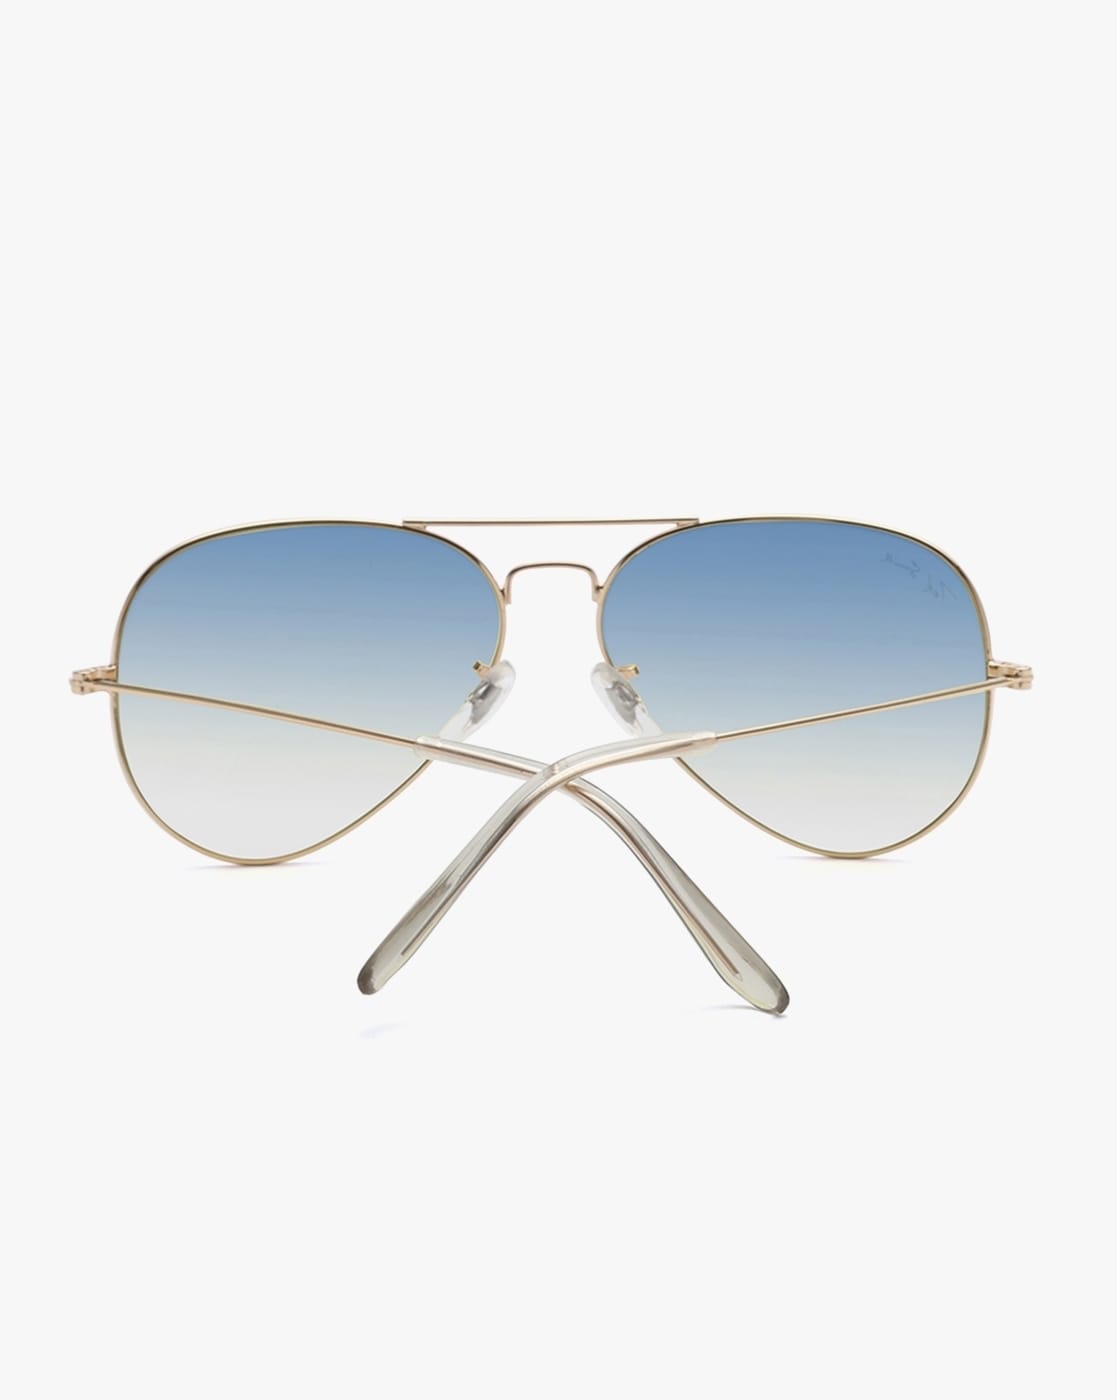 Buy agera Aviator Sunglasses Silver, Blue For Men & Women Online @ Best  Prices in India | Flipkart.com